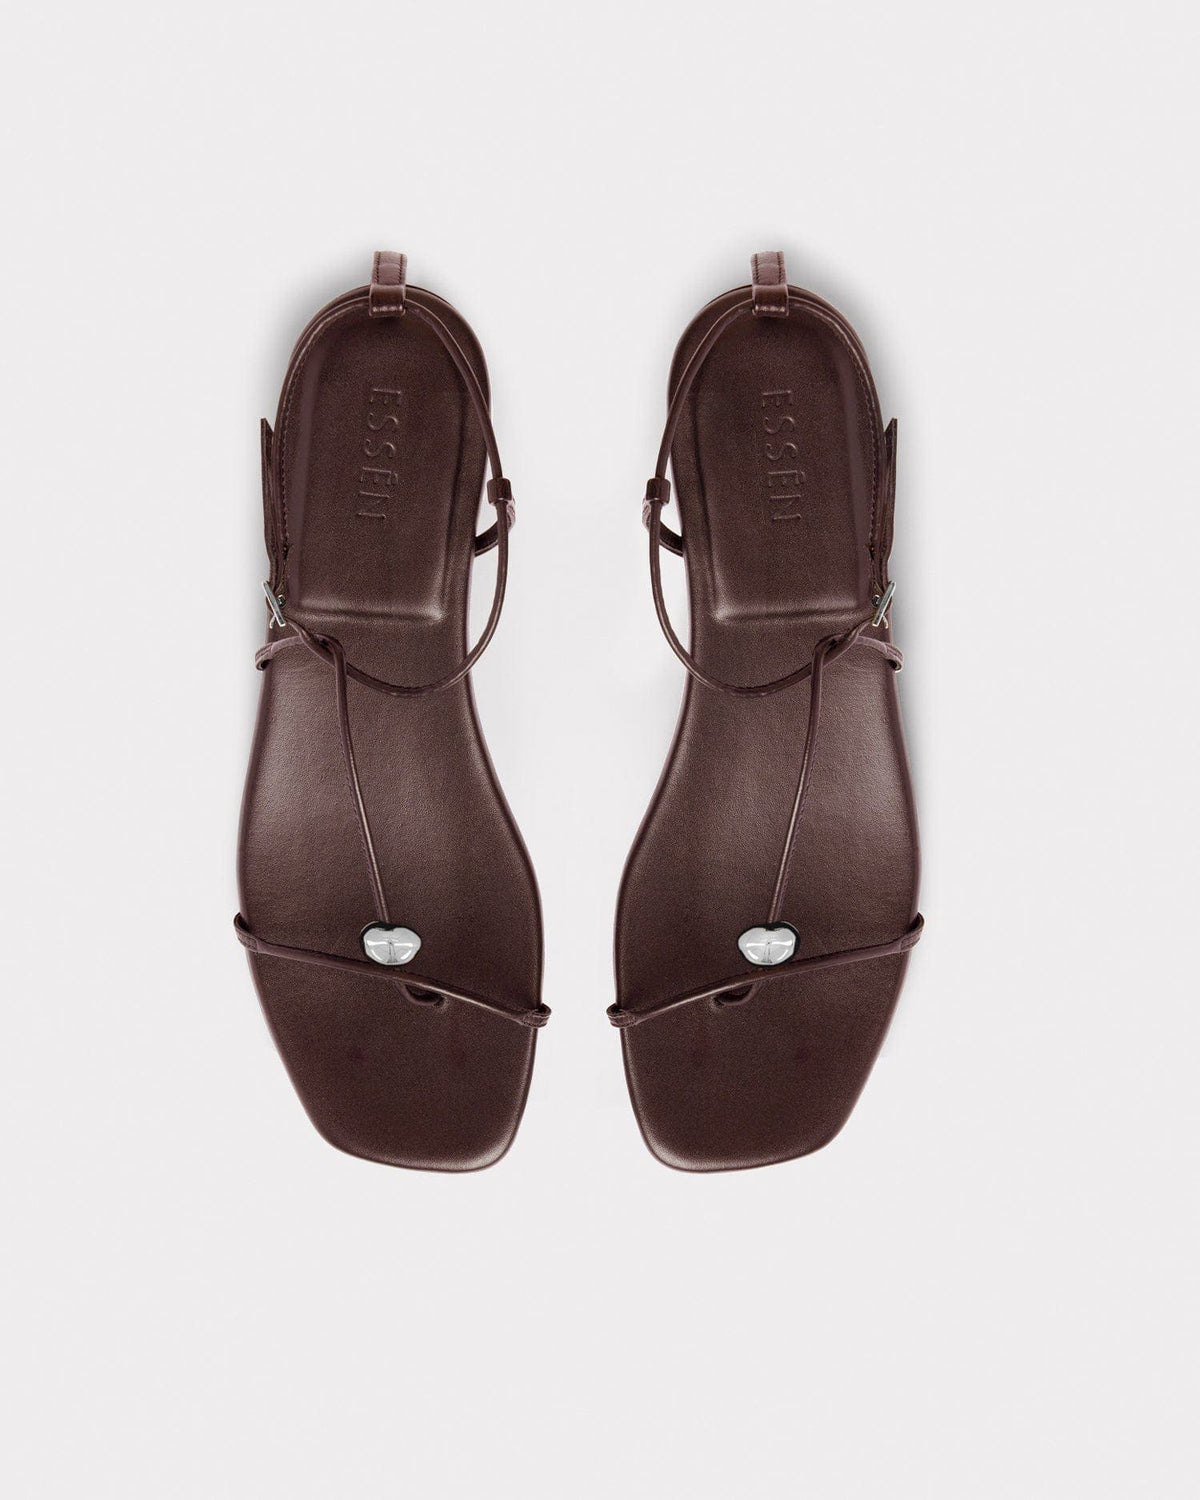 quiet luxury strappy summer sandals in chocolate brown